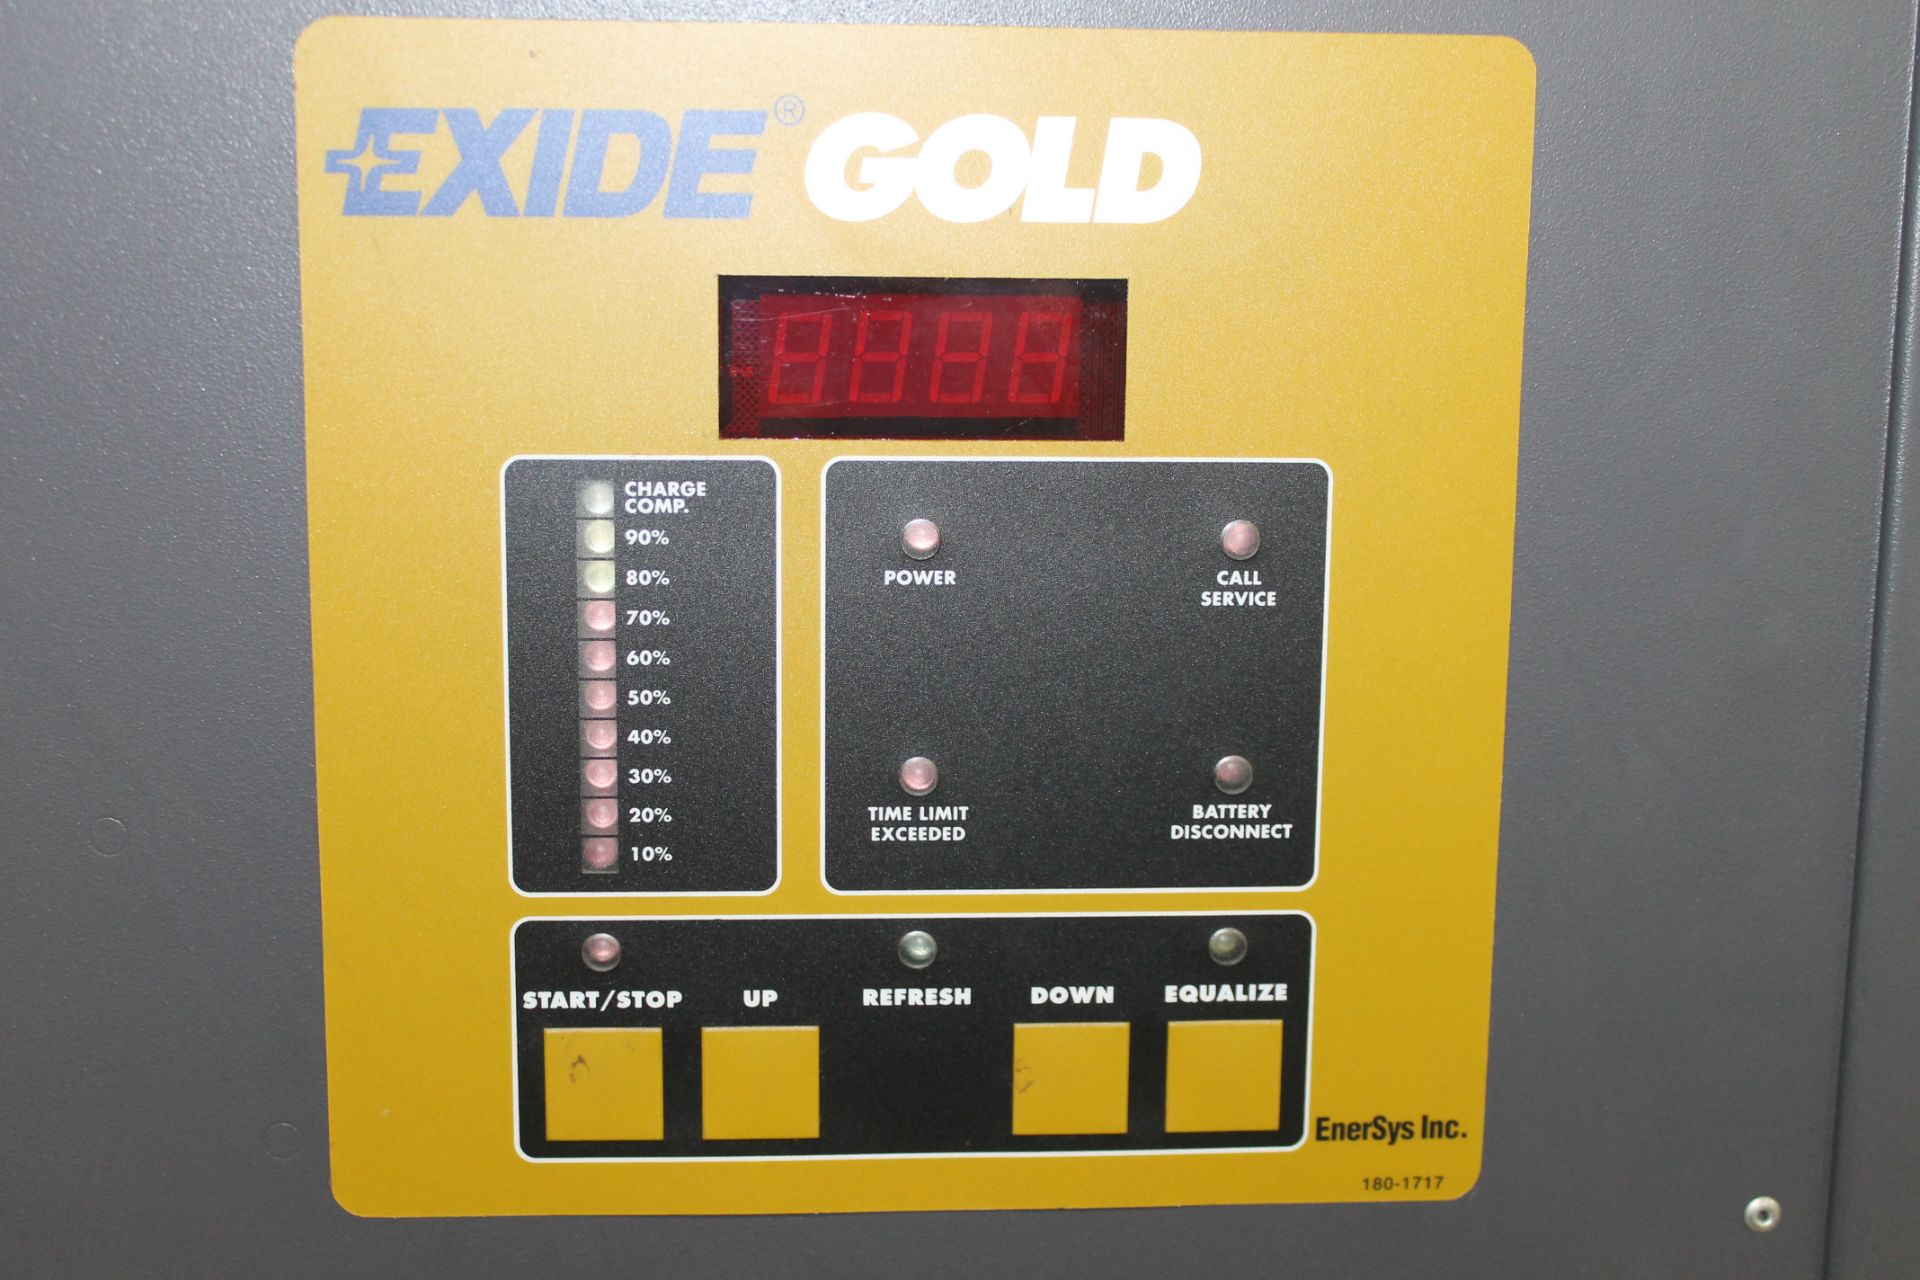 EXIDE GOLD ELECTRIC FORKLIFT BATTERY CHARGER, 24V - Image 3 of 4